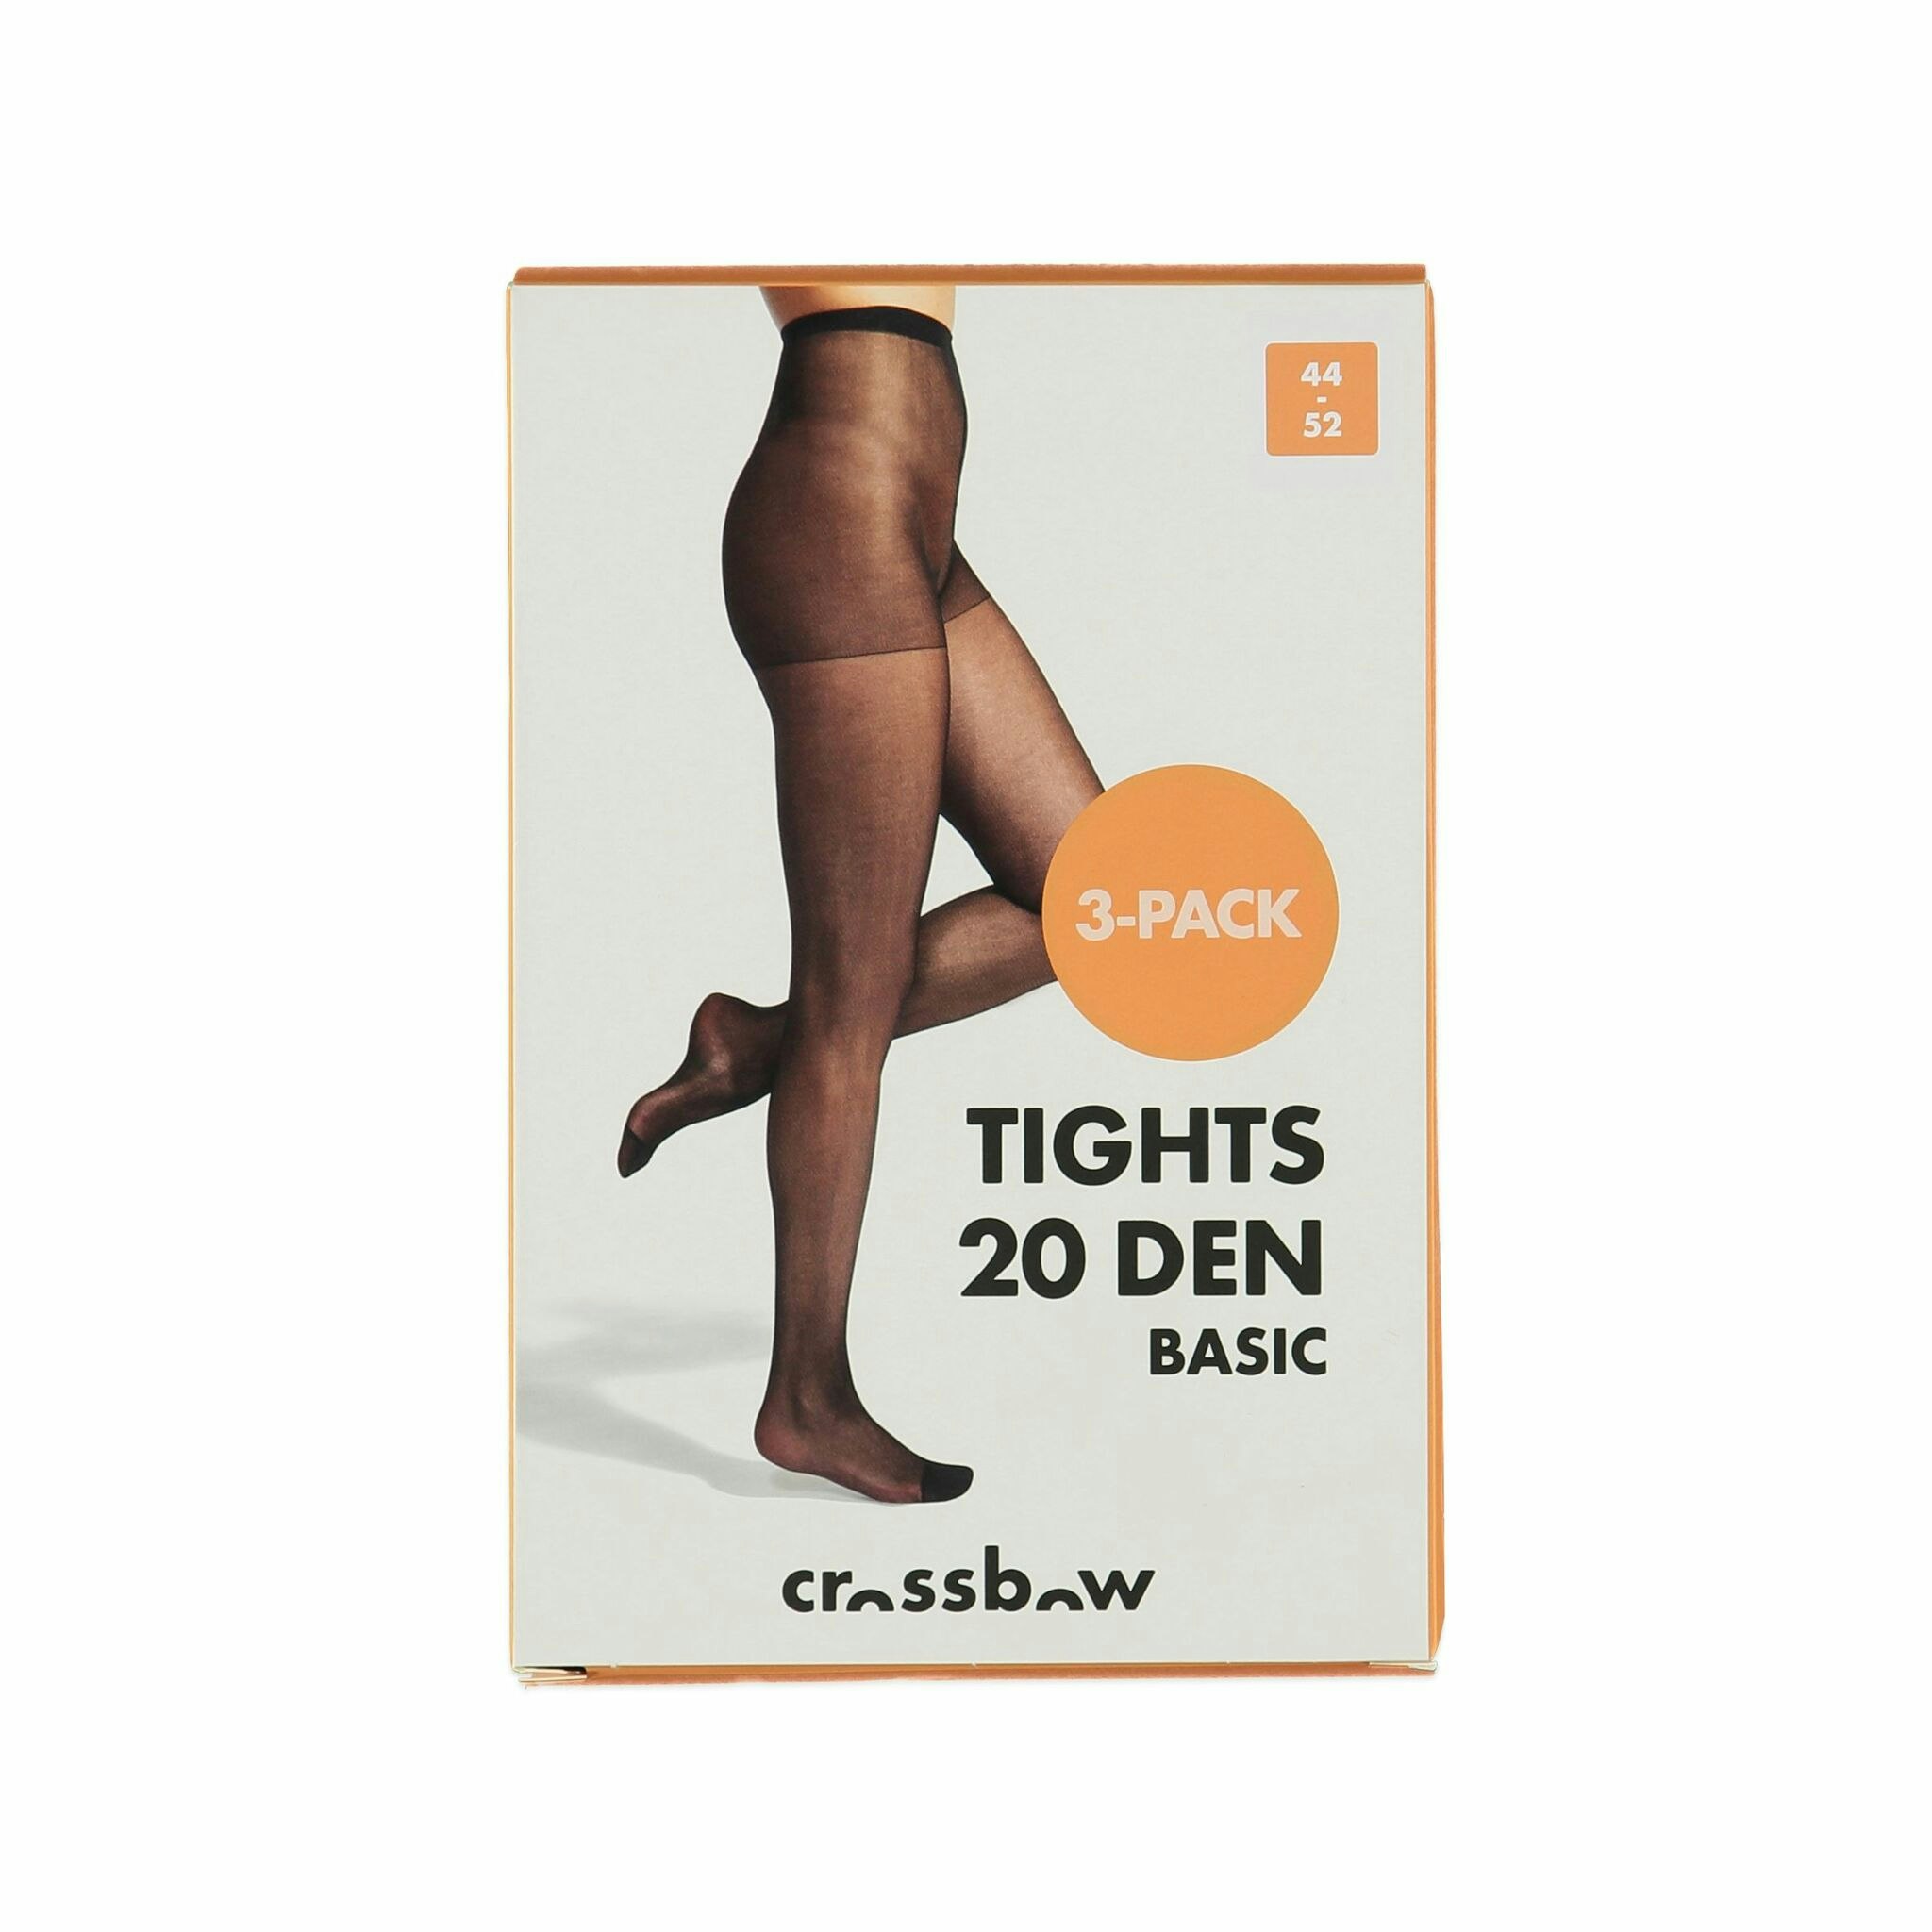 Strumpbyxa i 3-pack med förstärkt tå och gördel från Crossbow, 20 den.  Färg: Svart. - Roomoutlet.se - Textilier och inredning i Karlstad